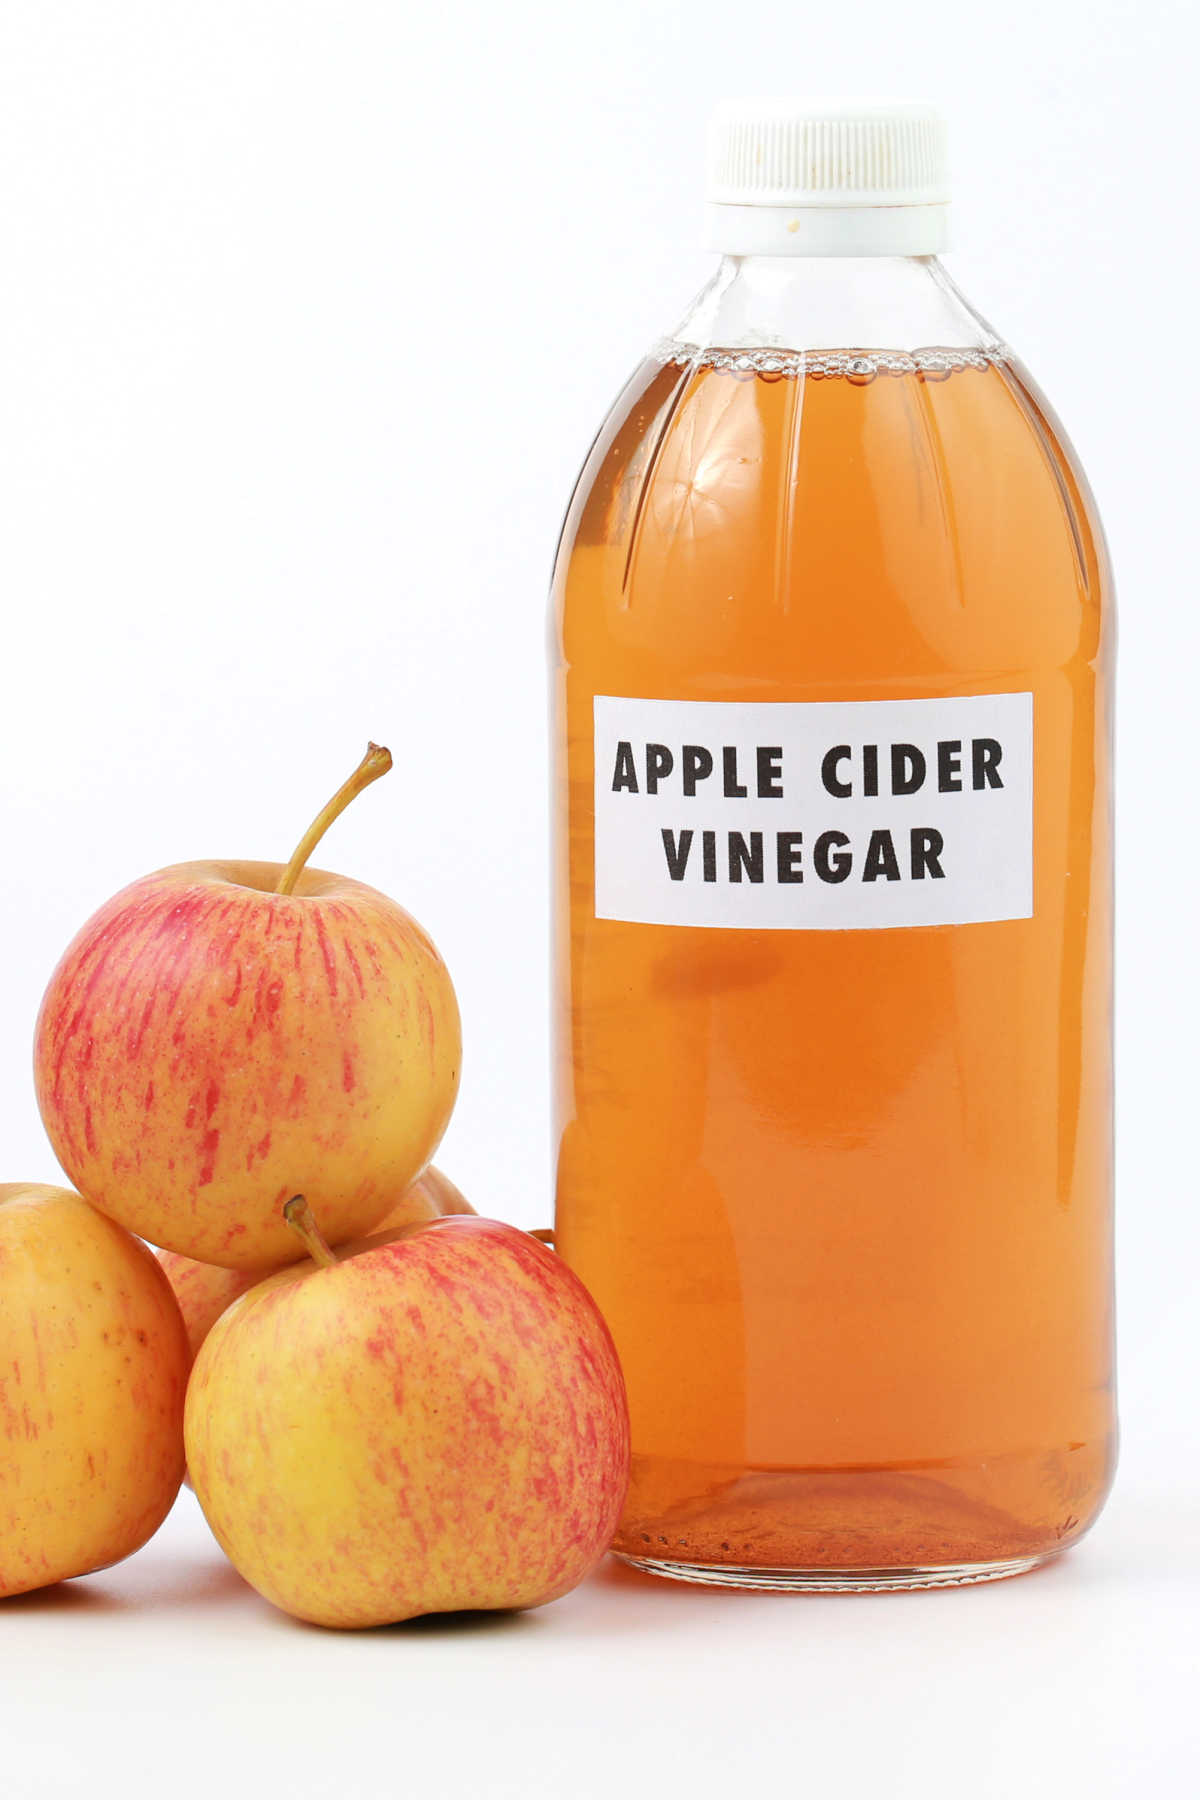 Bottle of Apple Cider Vinegar and Apples